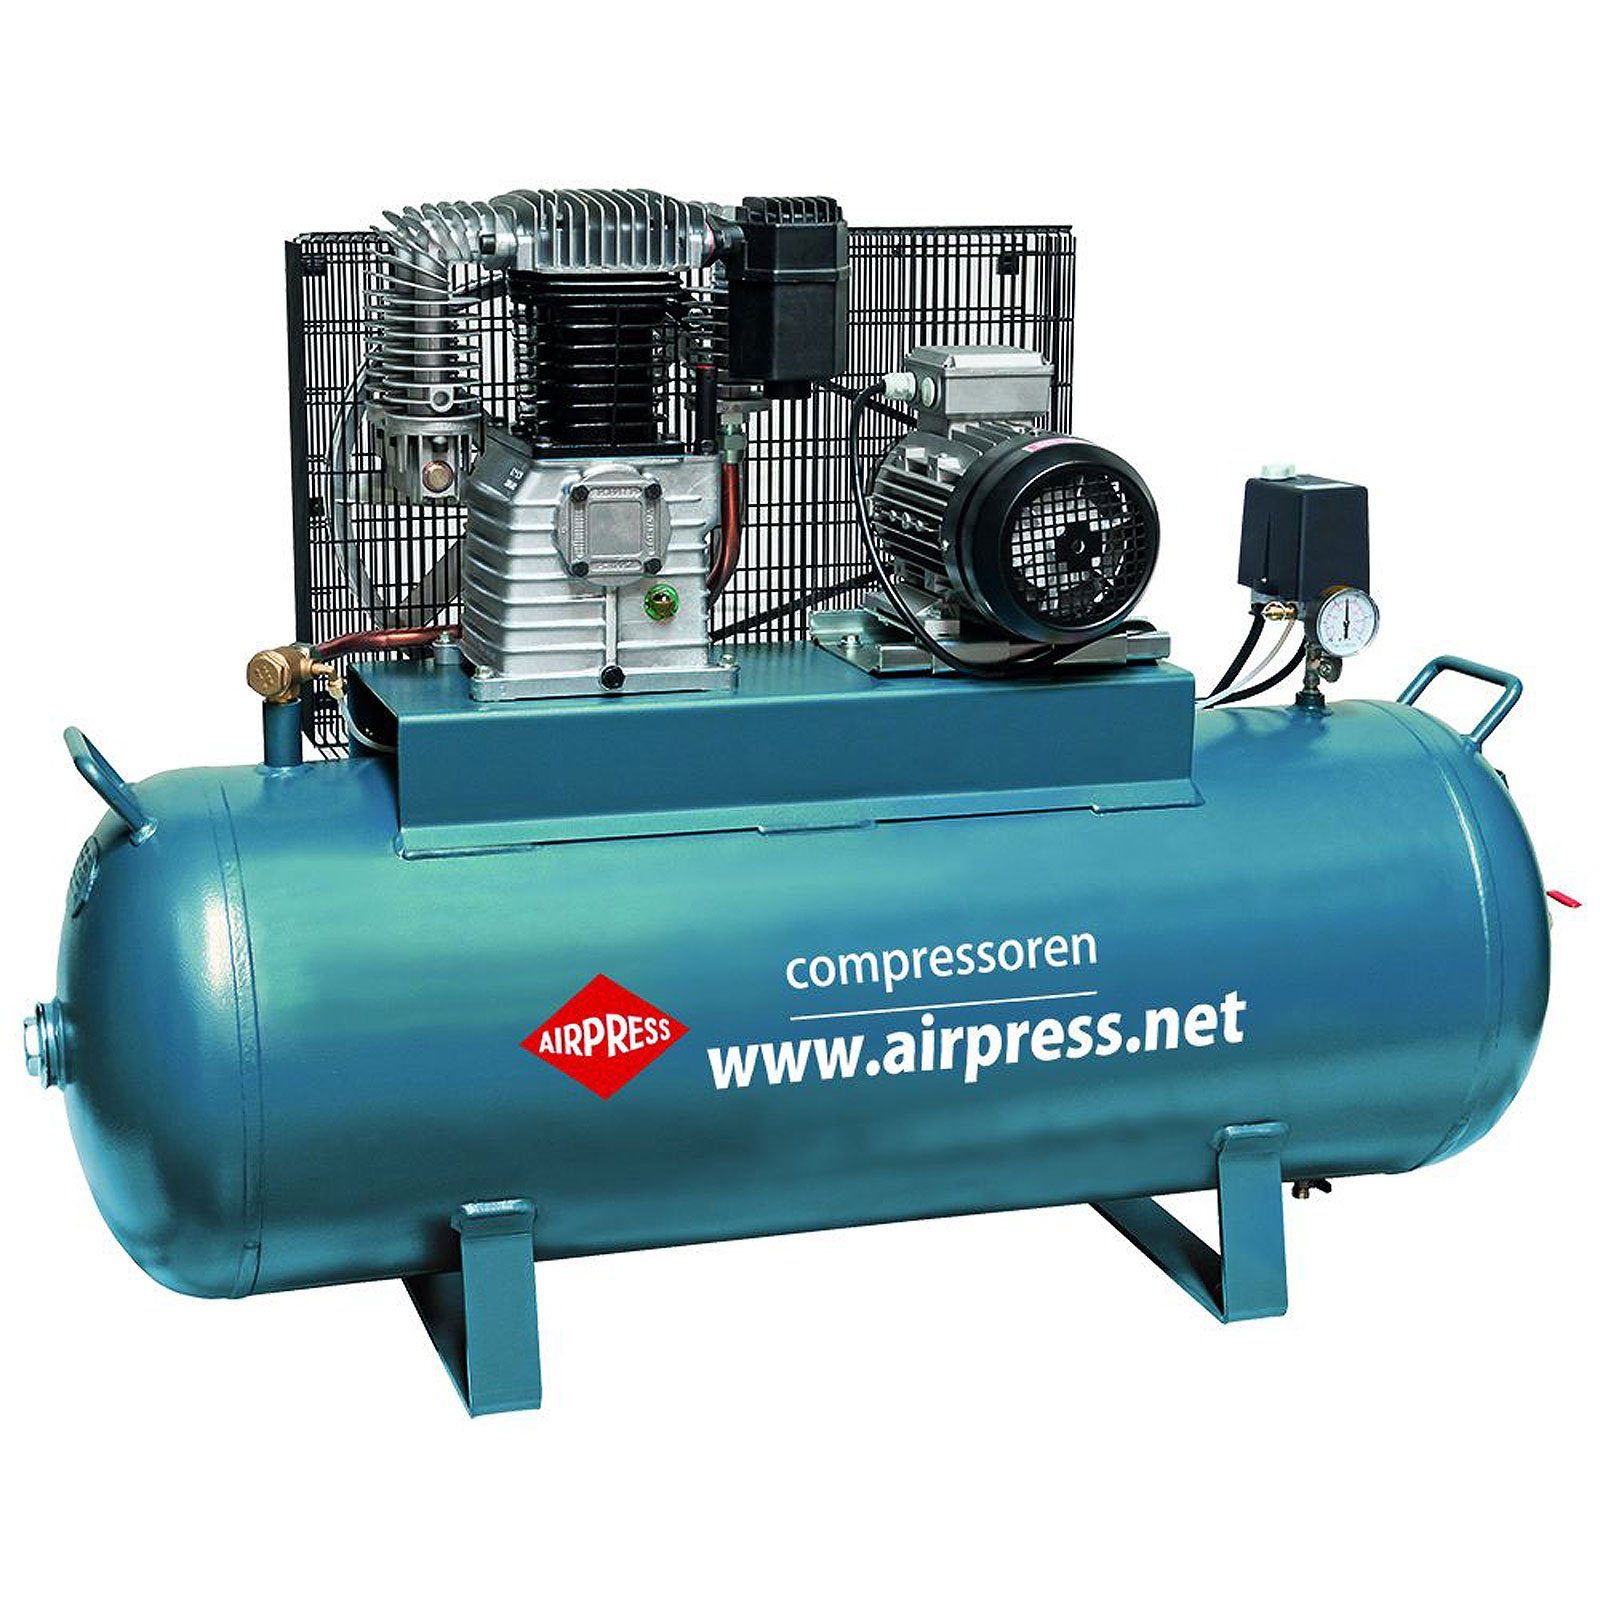 Airpress Kompressor Kompressor 4 K200-600 l, bar, 14 max. 200 Liter Typ 36500-N, bar 15 PS 1 200 Stück